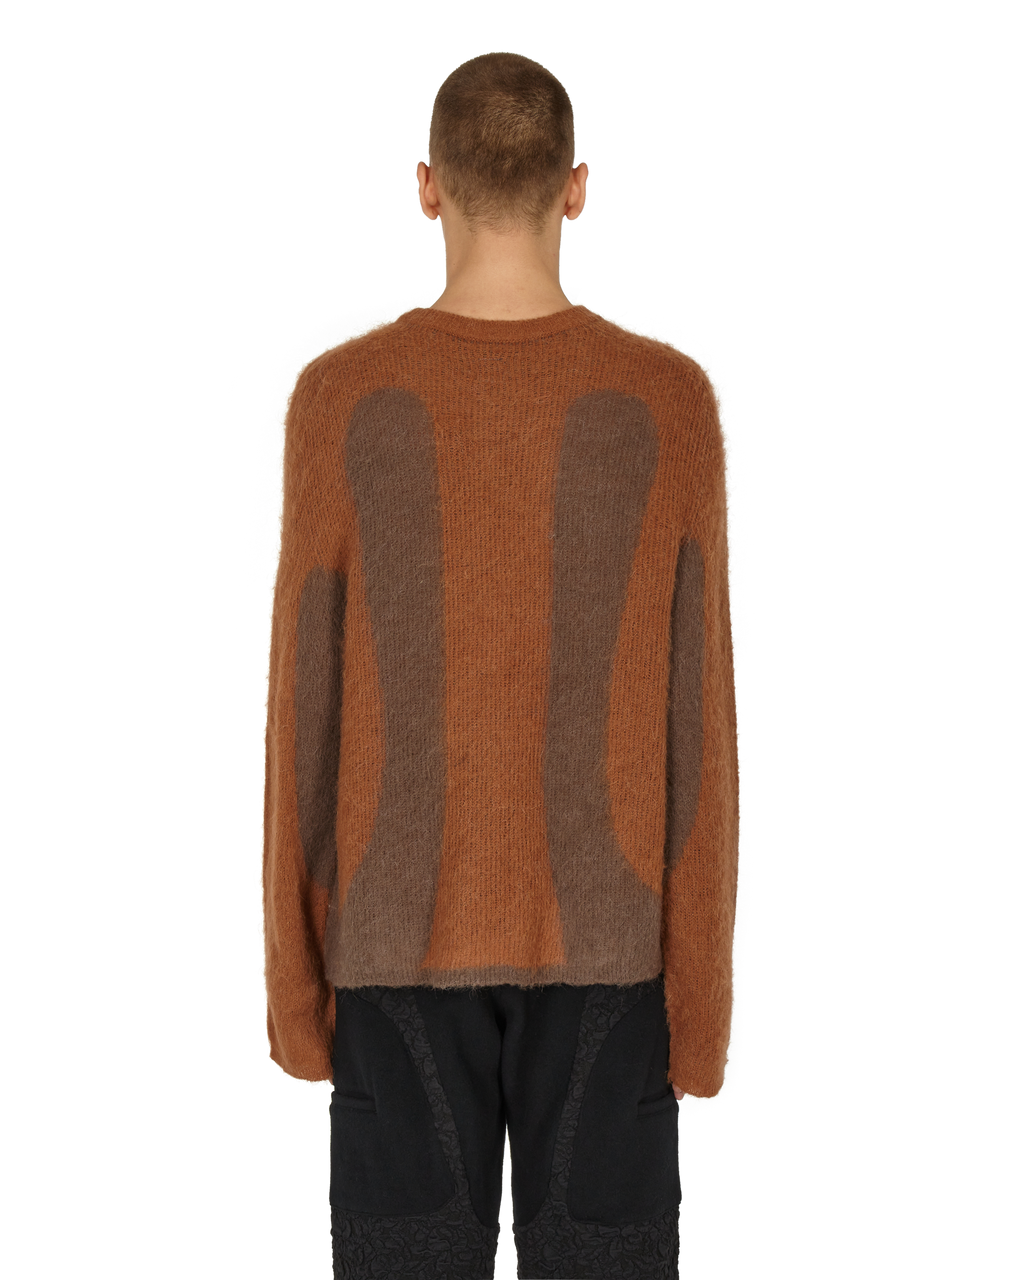 Liquid Sweater – _J.L - A.L_